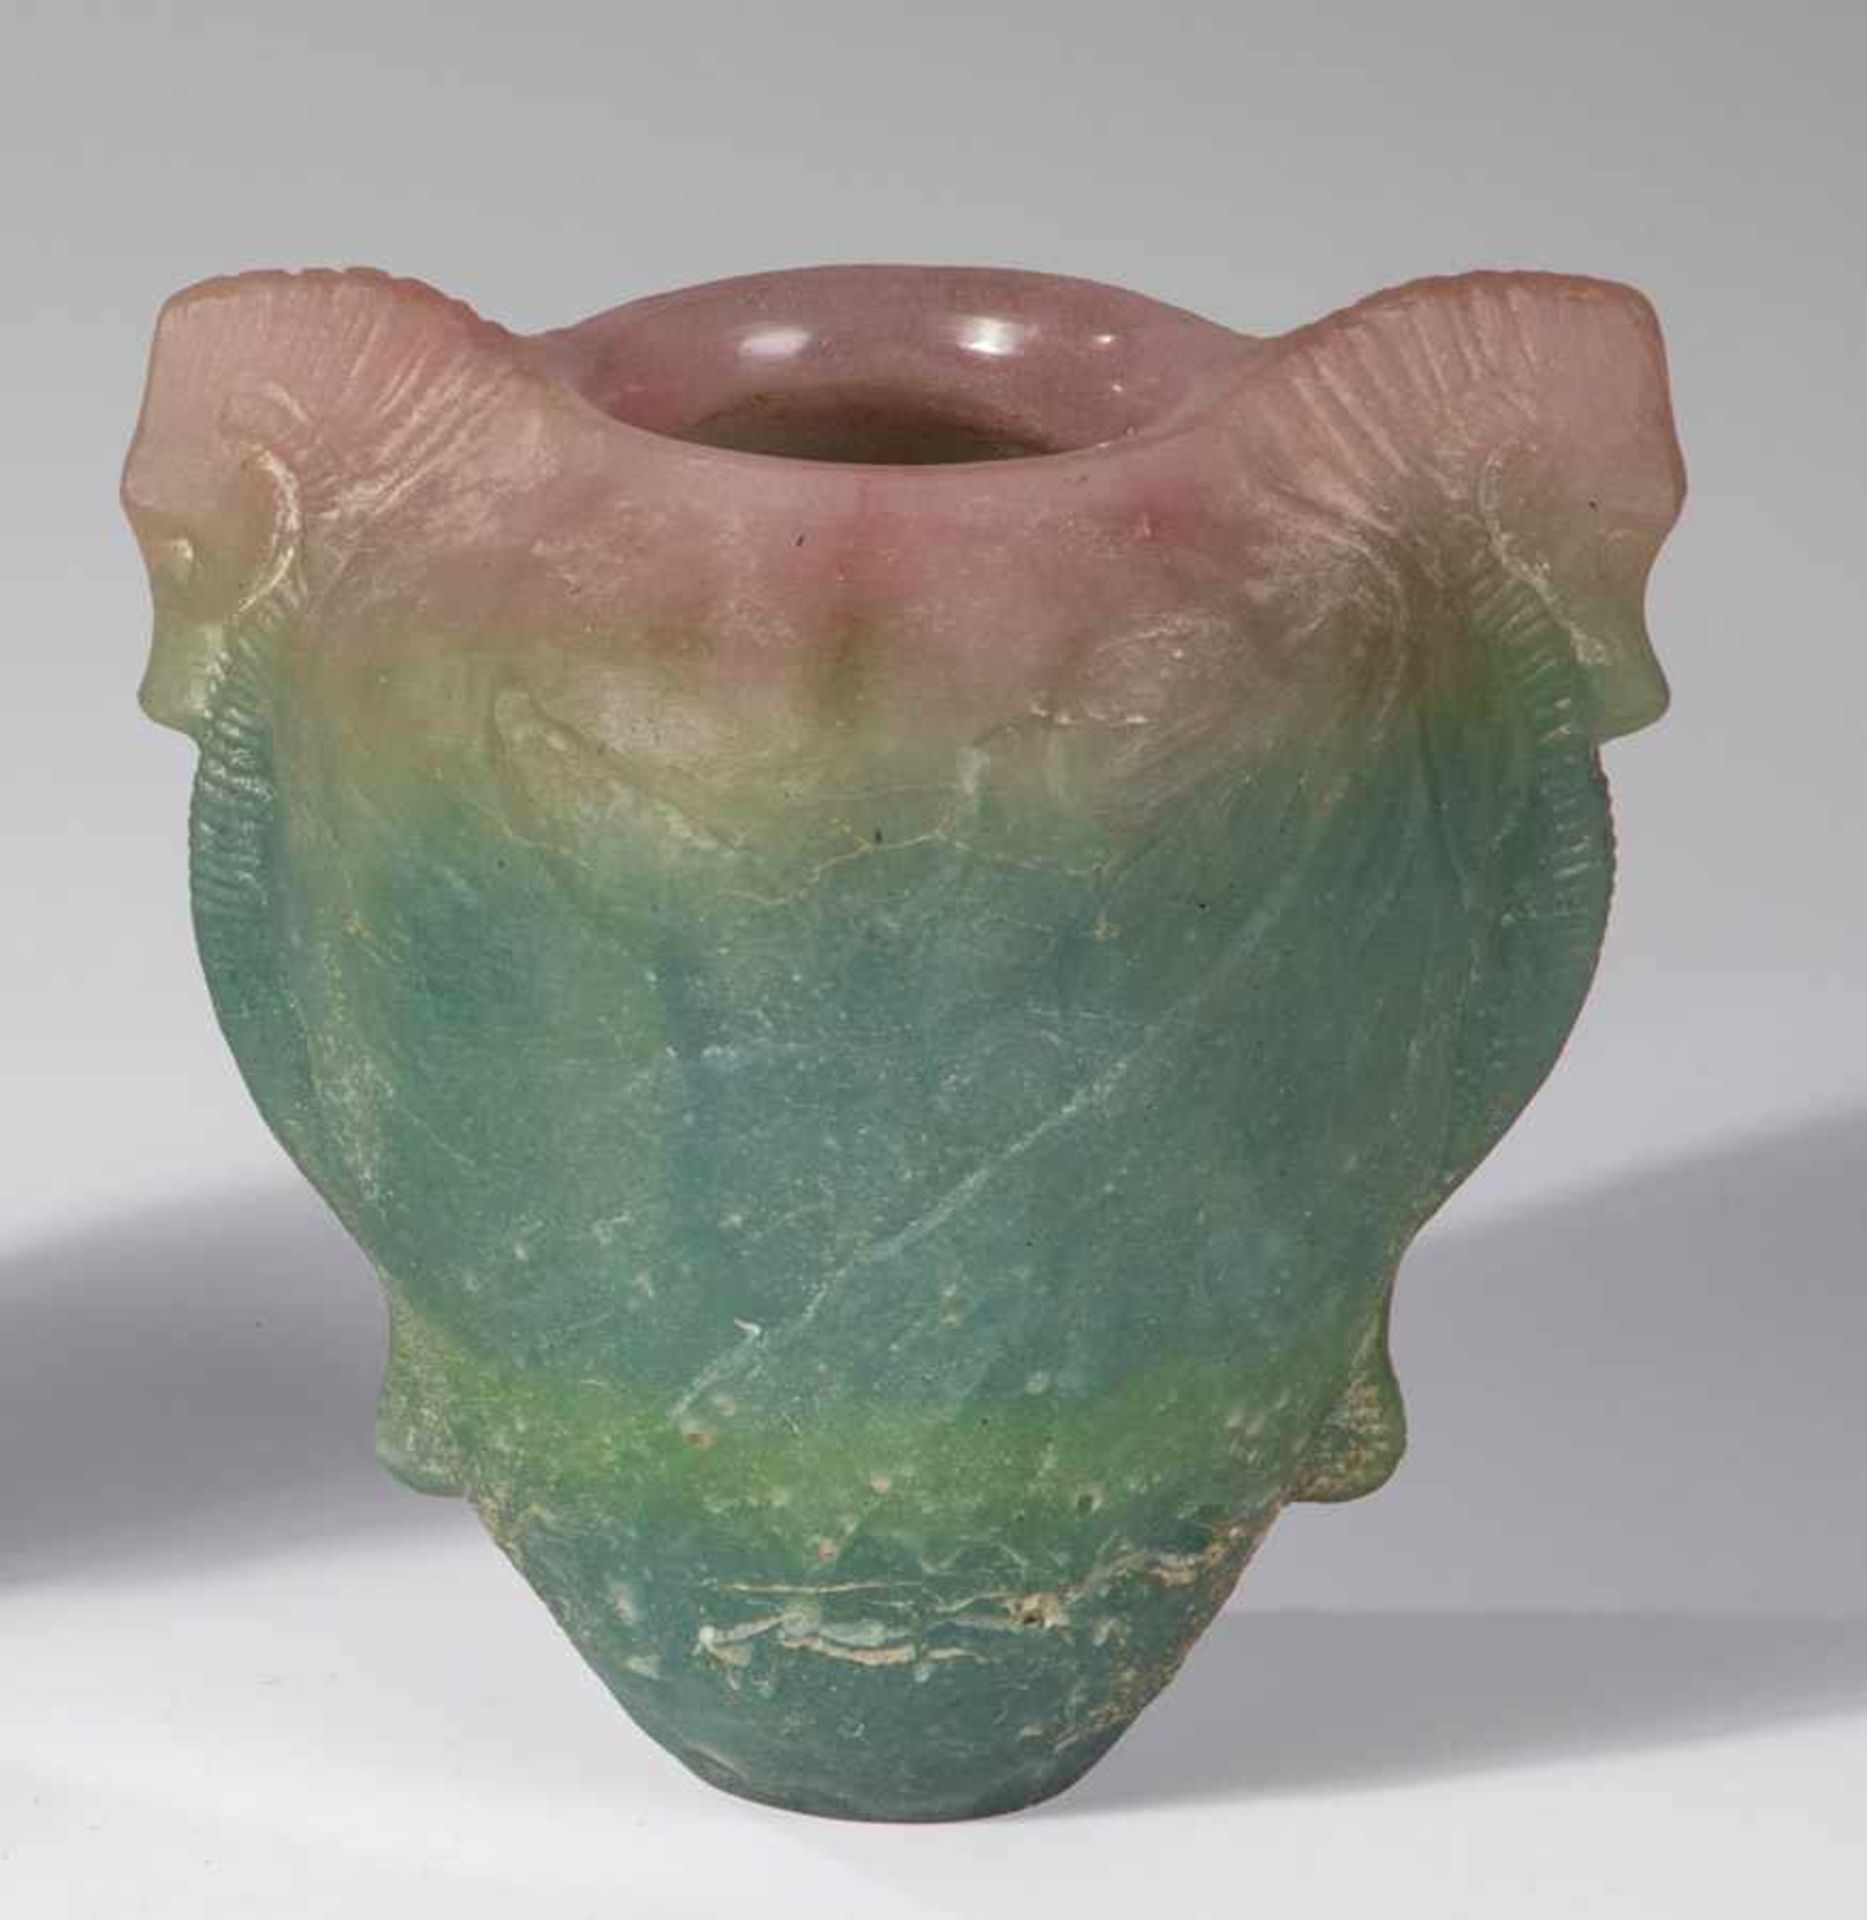 Vase mit UnterwasserdekorGeorges Despret, um 1905 Pâte de verre in den Farben Türkis, Grün und Rosa,